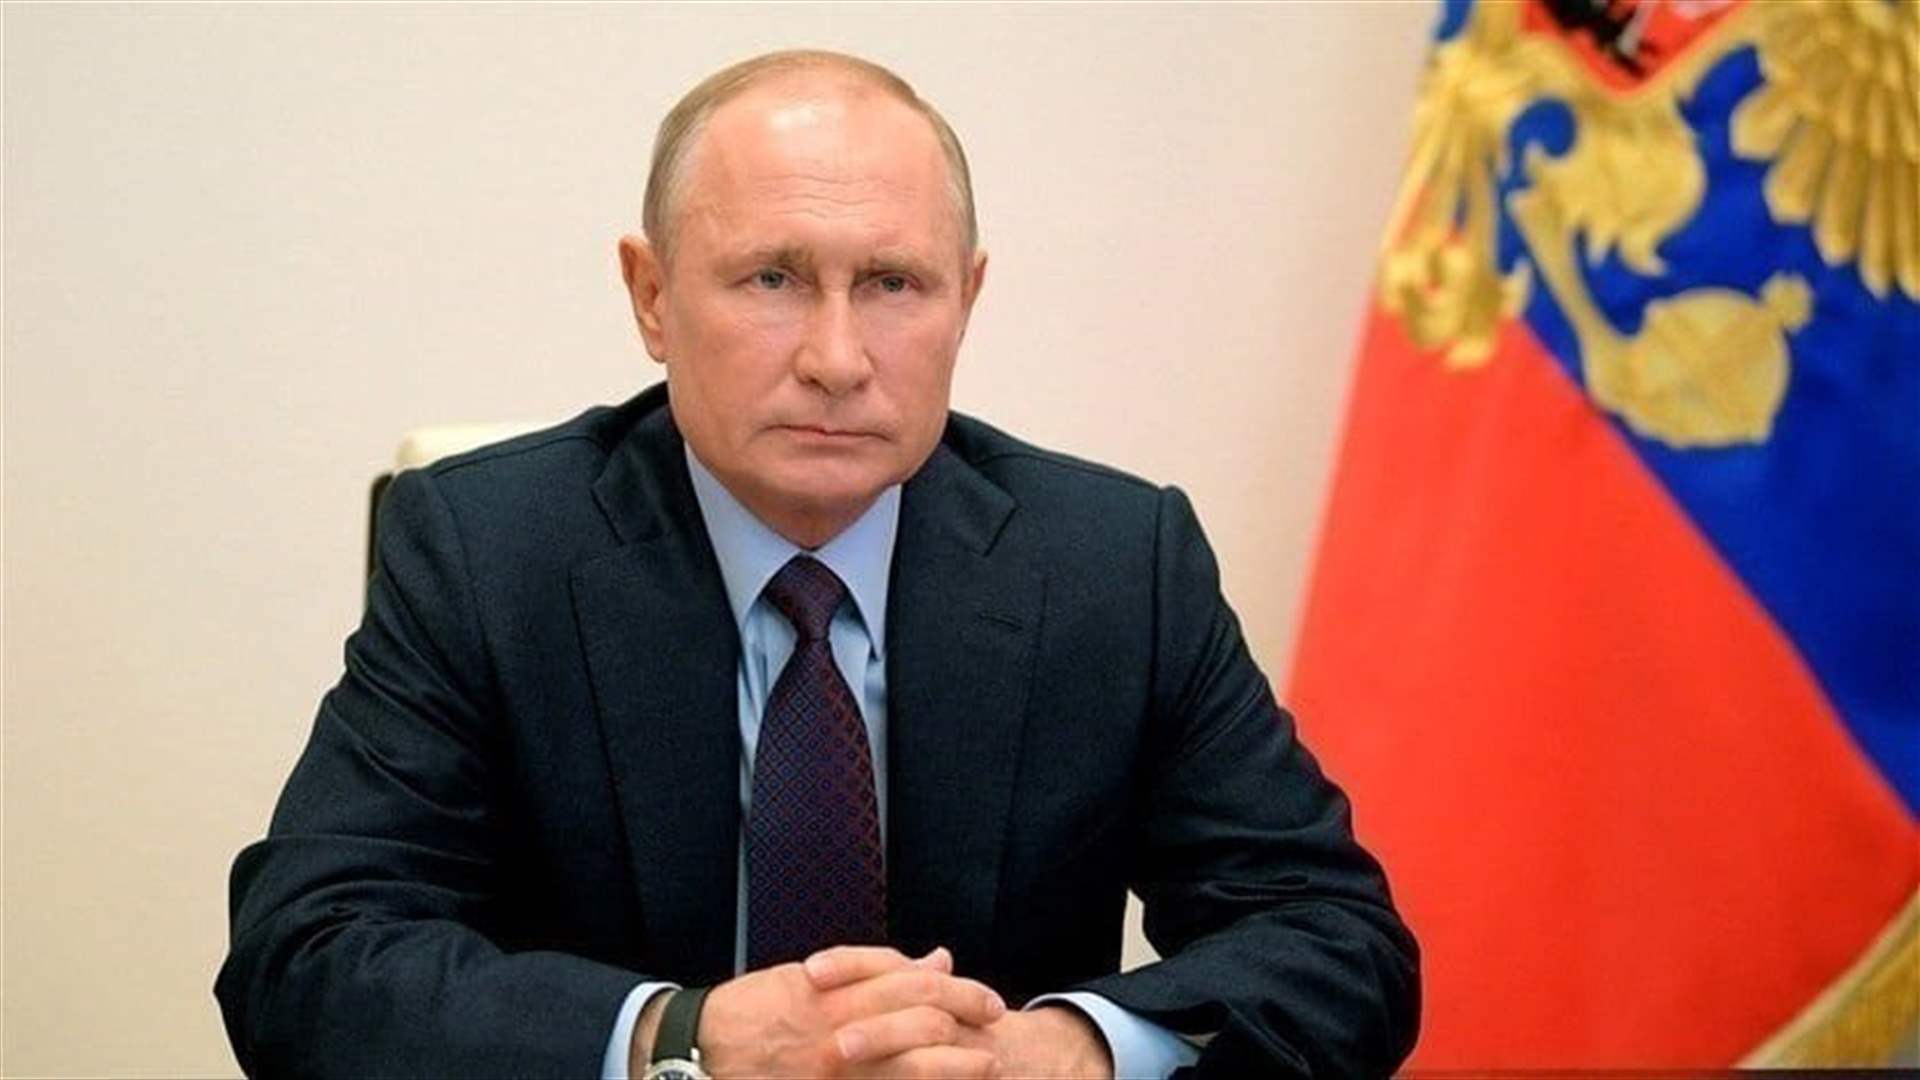 بوتين يدعو إلى رد صارم على محاولات الأجهزة الخاصة الأجنبية لزعزعة استقرار روسيا